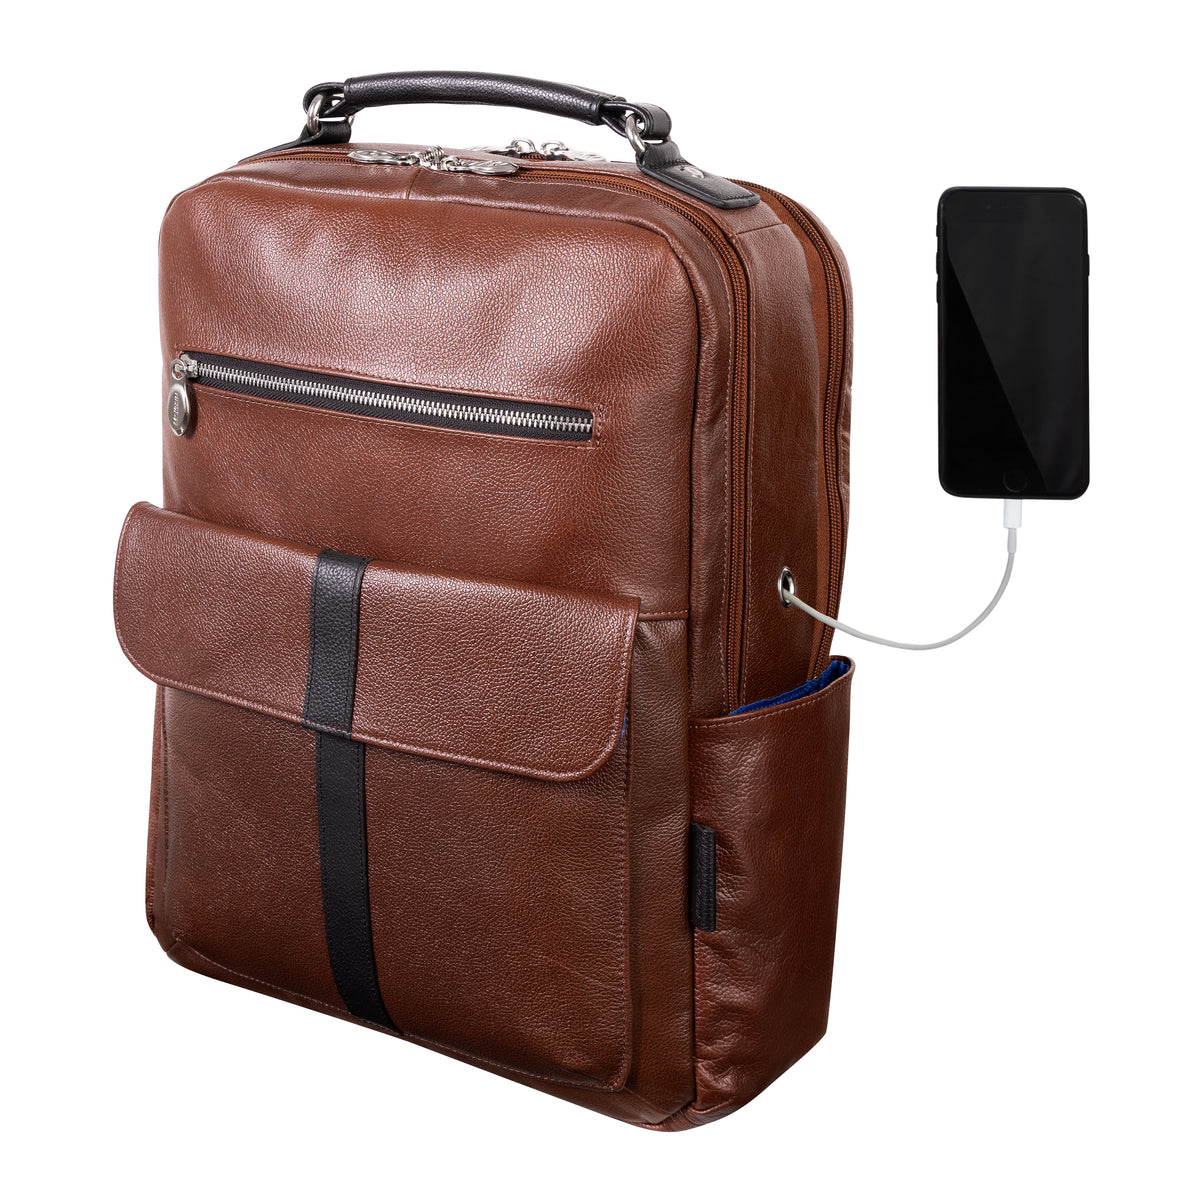 Back to Office Bag for Men Tablet Bag Student Bag Leather Flap 